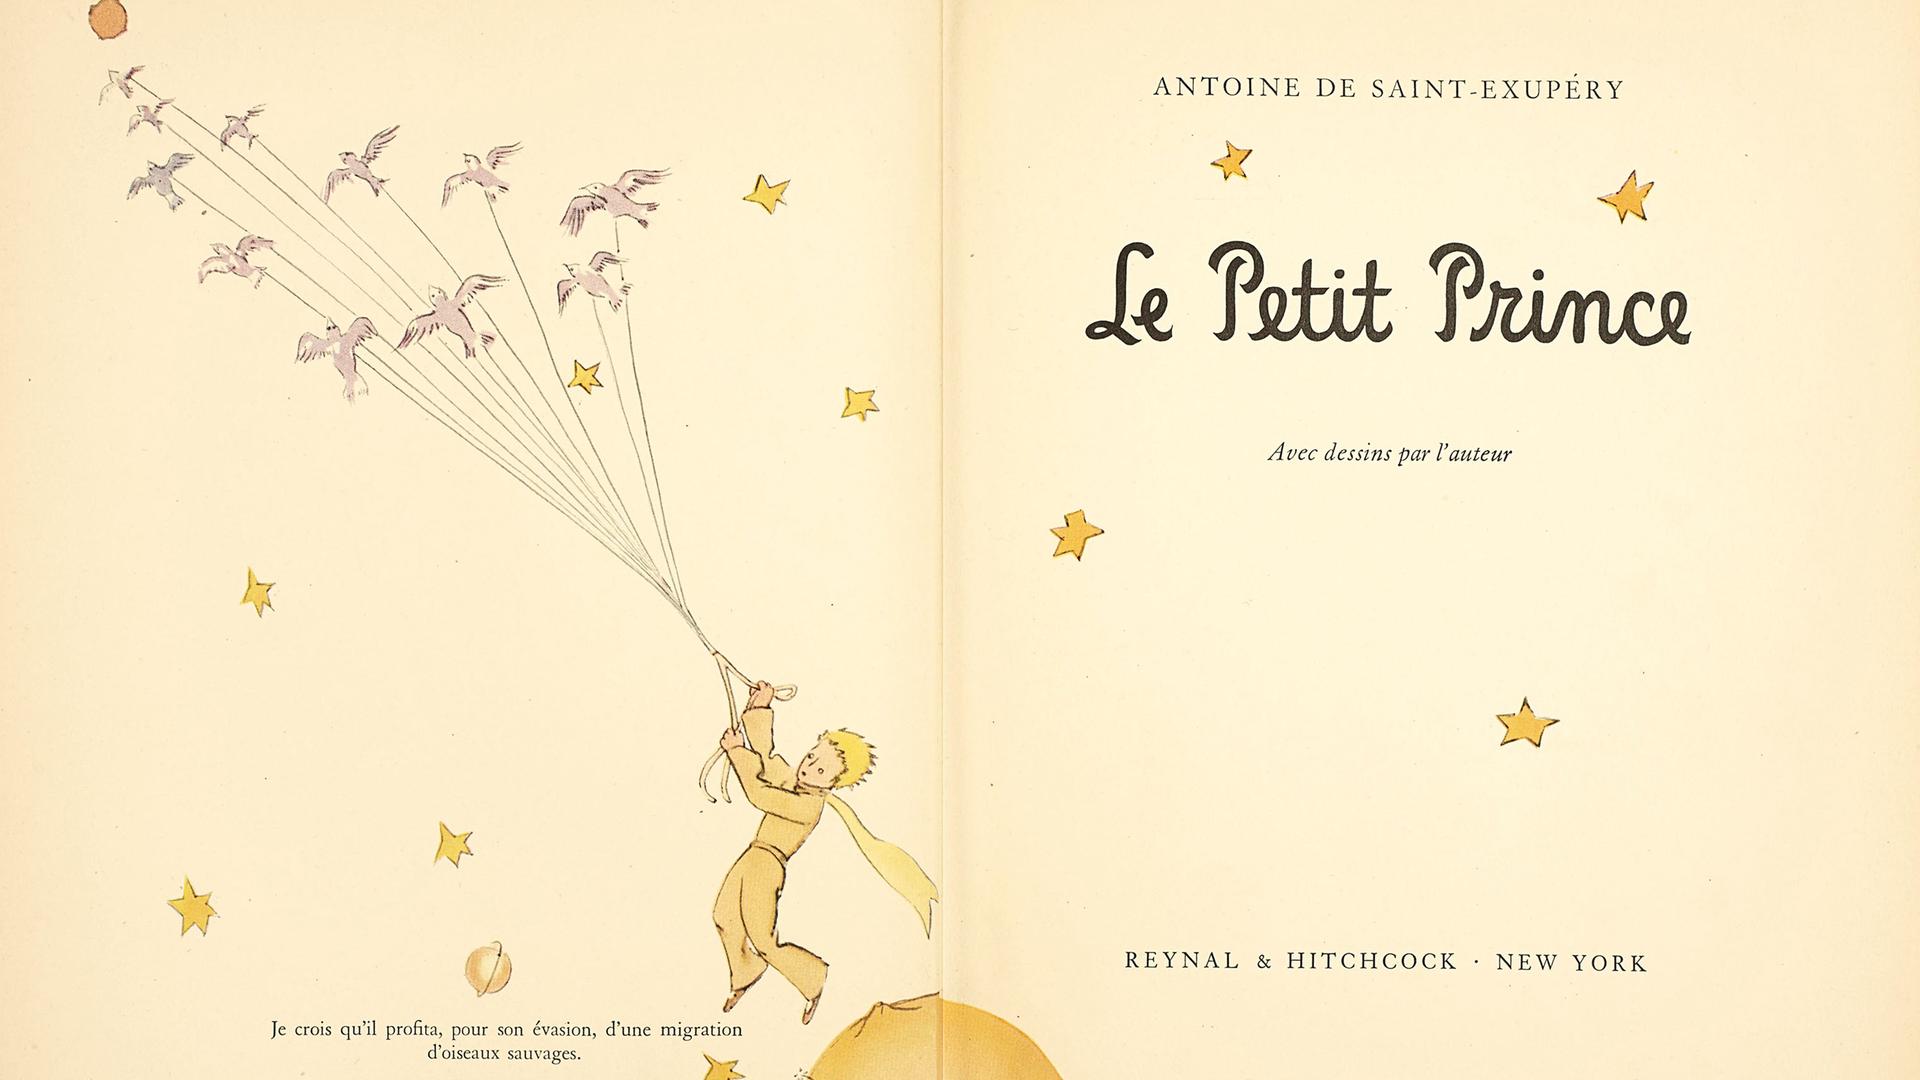 Die Originalausgabe von  "Le Petit Prince", 1943 in New York erschienen. Man sieht Sterne und einen Jungen mit blonden Haaren, der von einem auffliegenden Schwarm Vögel ins Weltall gezogen wird.